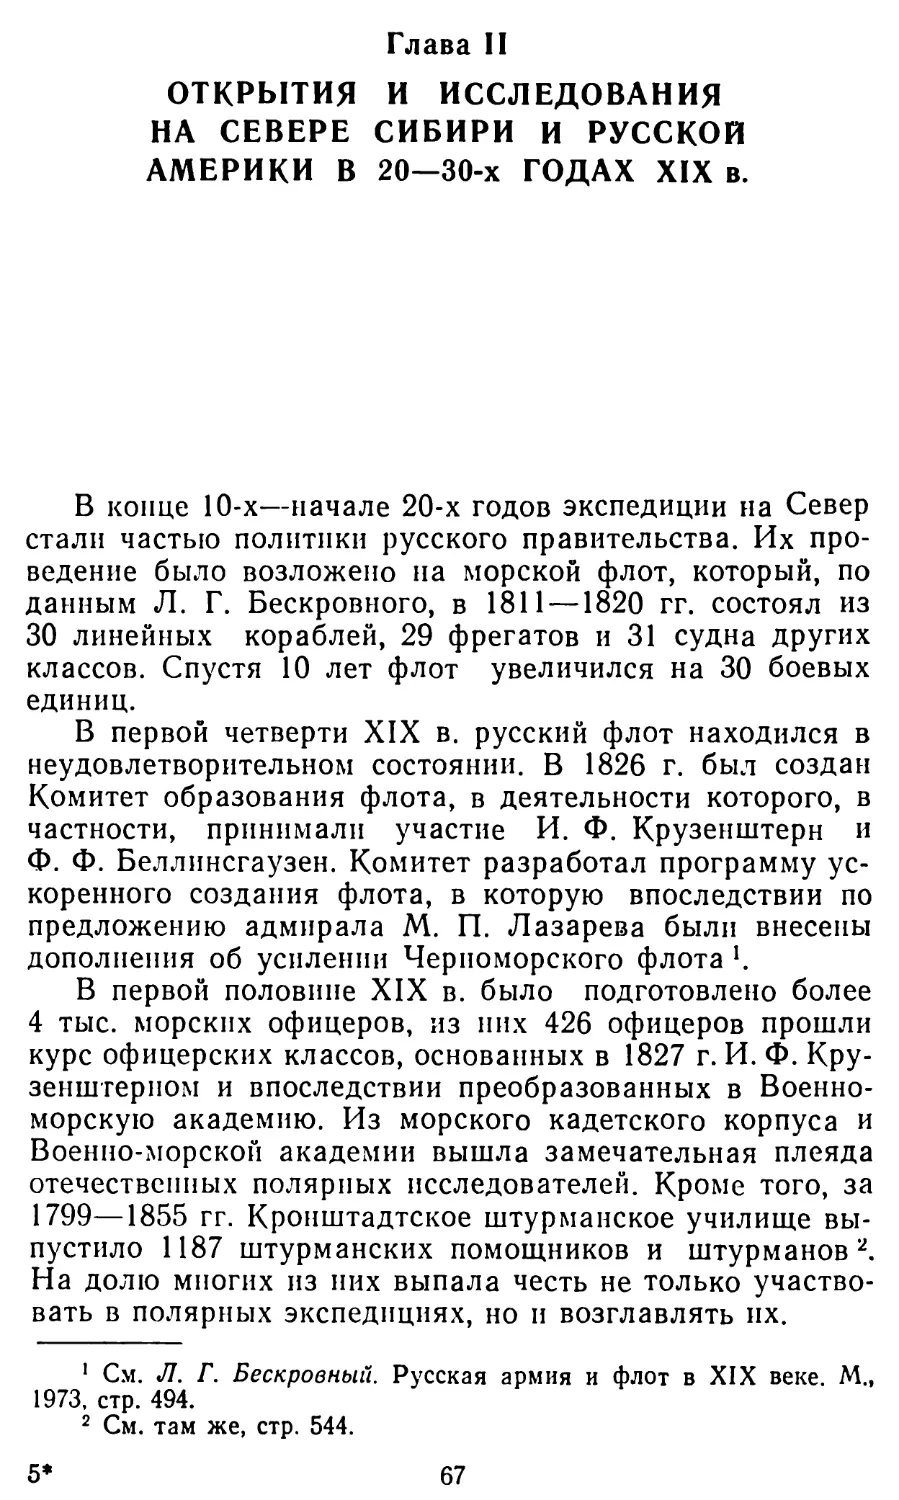 Глава II. Открытия и исследования на севере Сибири и Русской Америки в 20—30-х годах XIX в